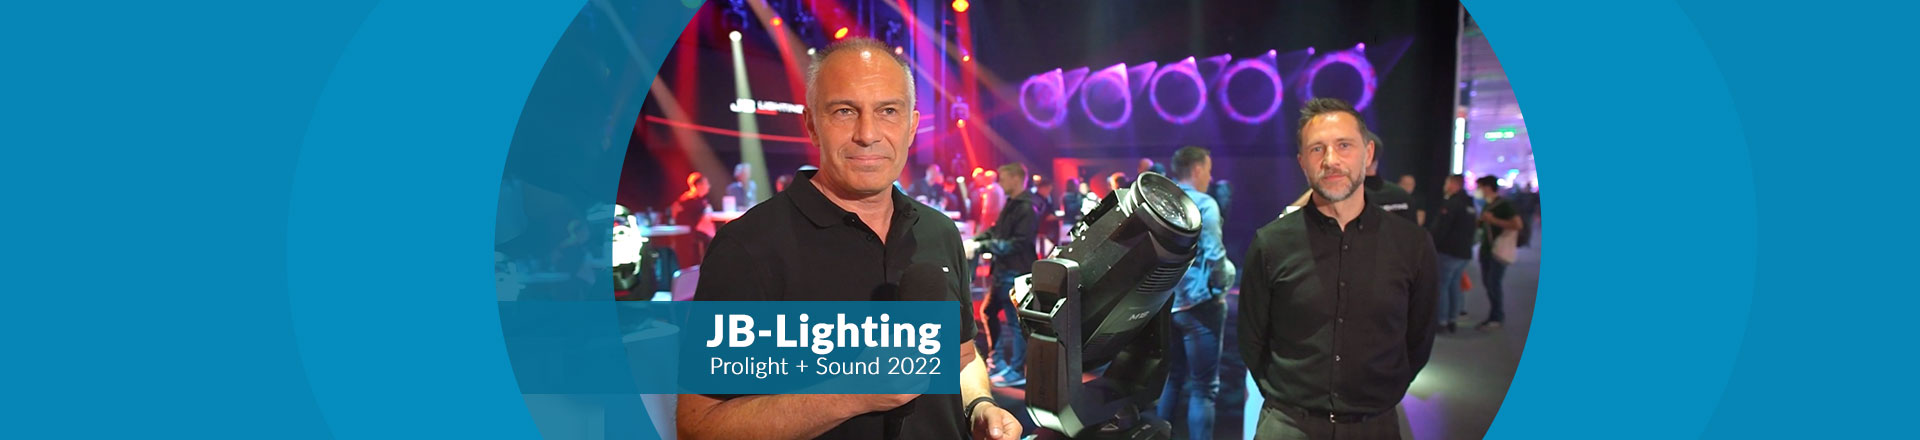 Oświetlenie JB-Lighting: ciche, jasne, europejskie!